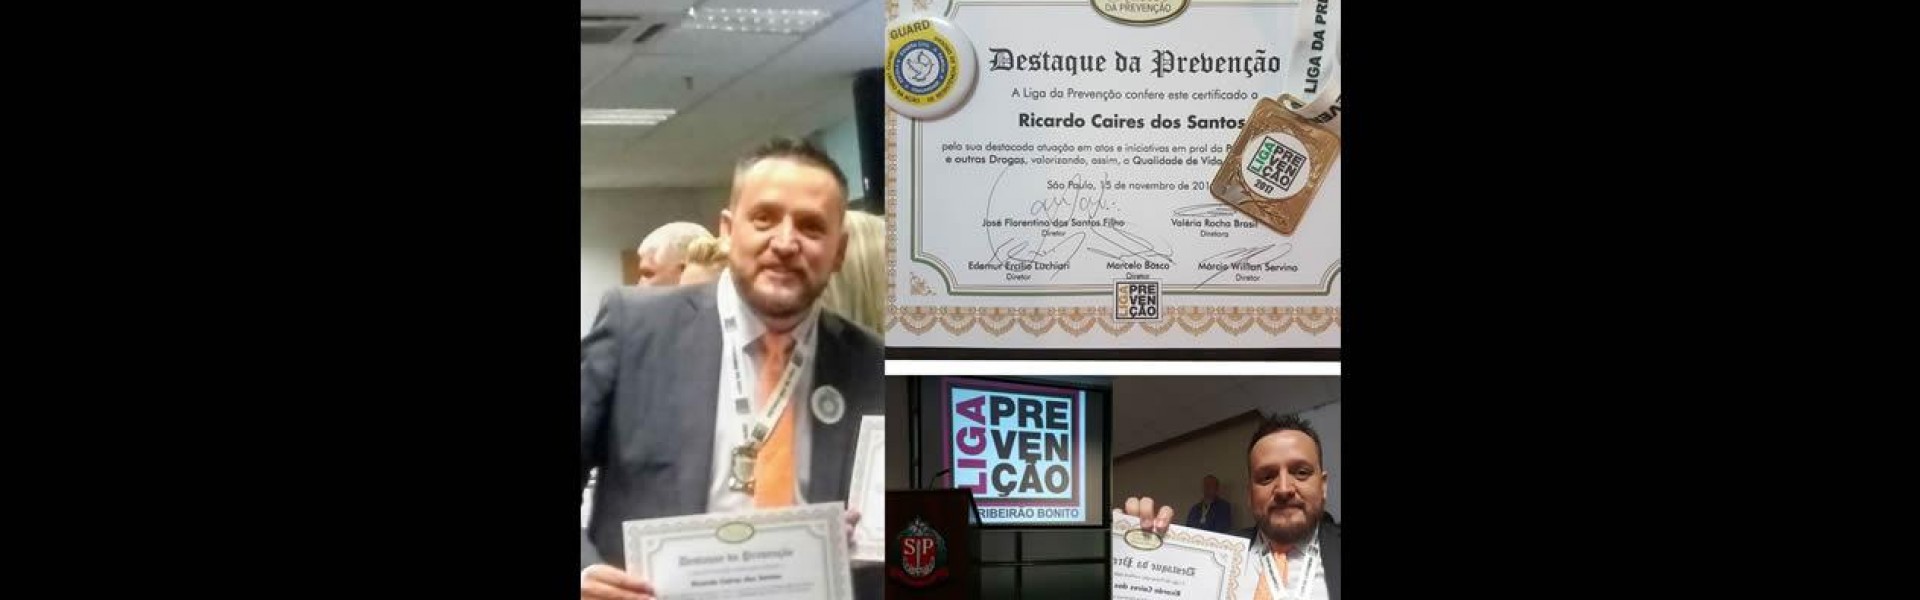 O perito Ricado Caires recebe premiação na Assembléia Legislativa de São Paulo